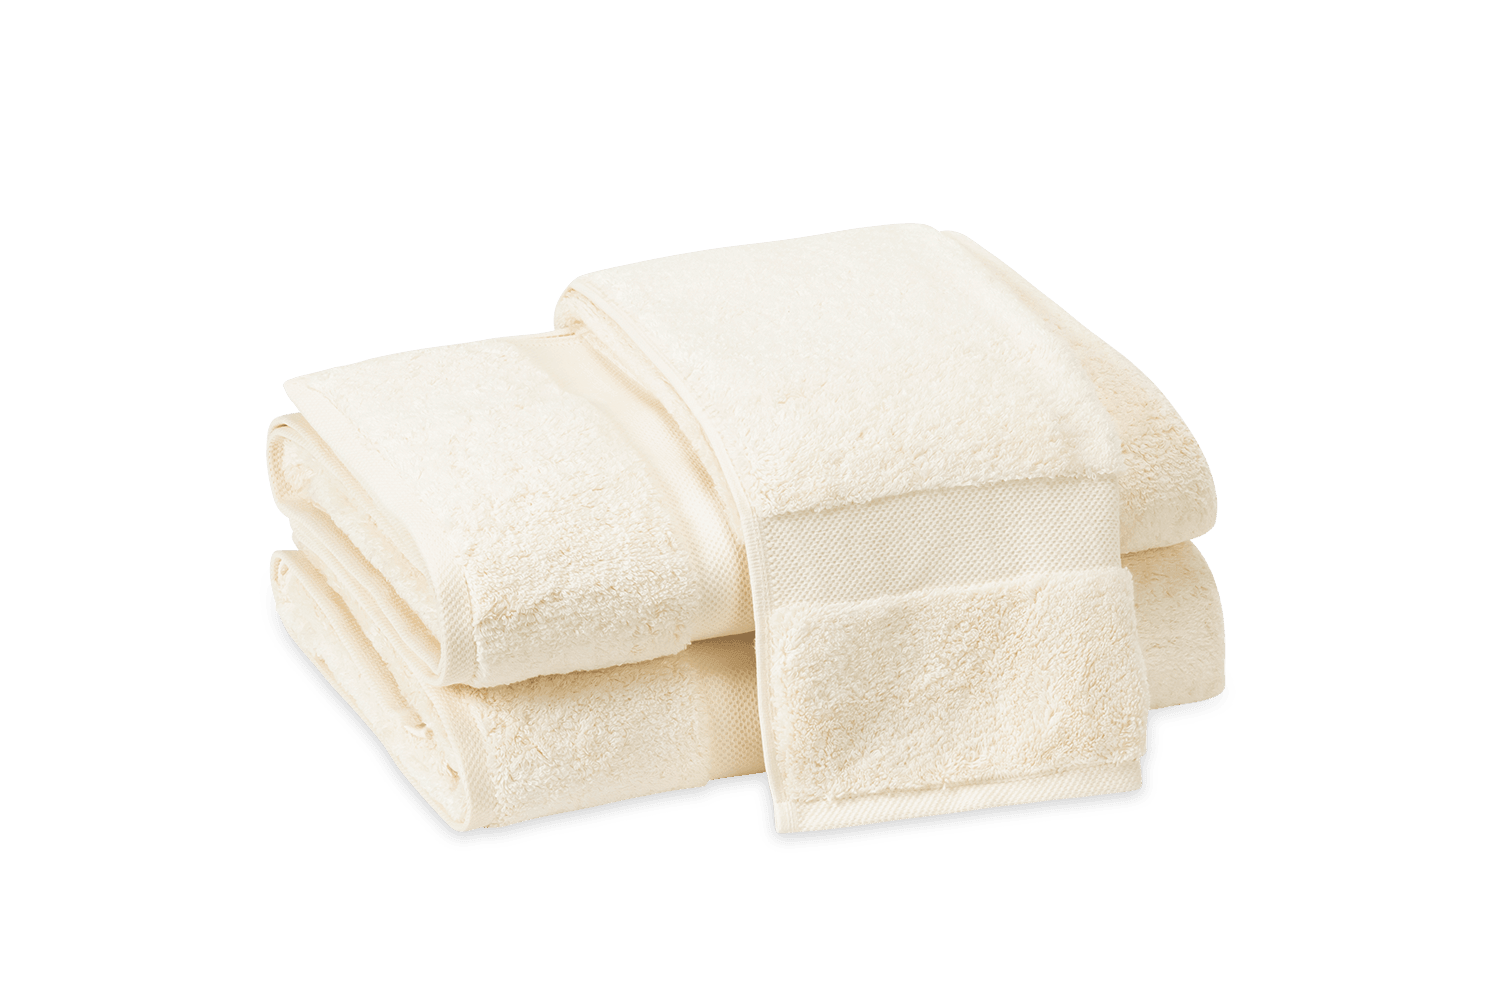 https://elegantlinen.com/cdn/shop/products/lotus-towels-elegant-linen-4.png?v=1700172564&width=1500